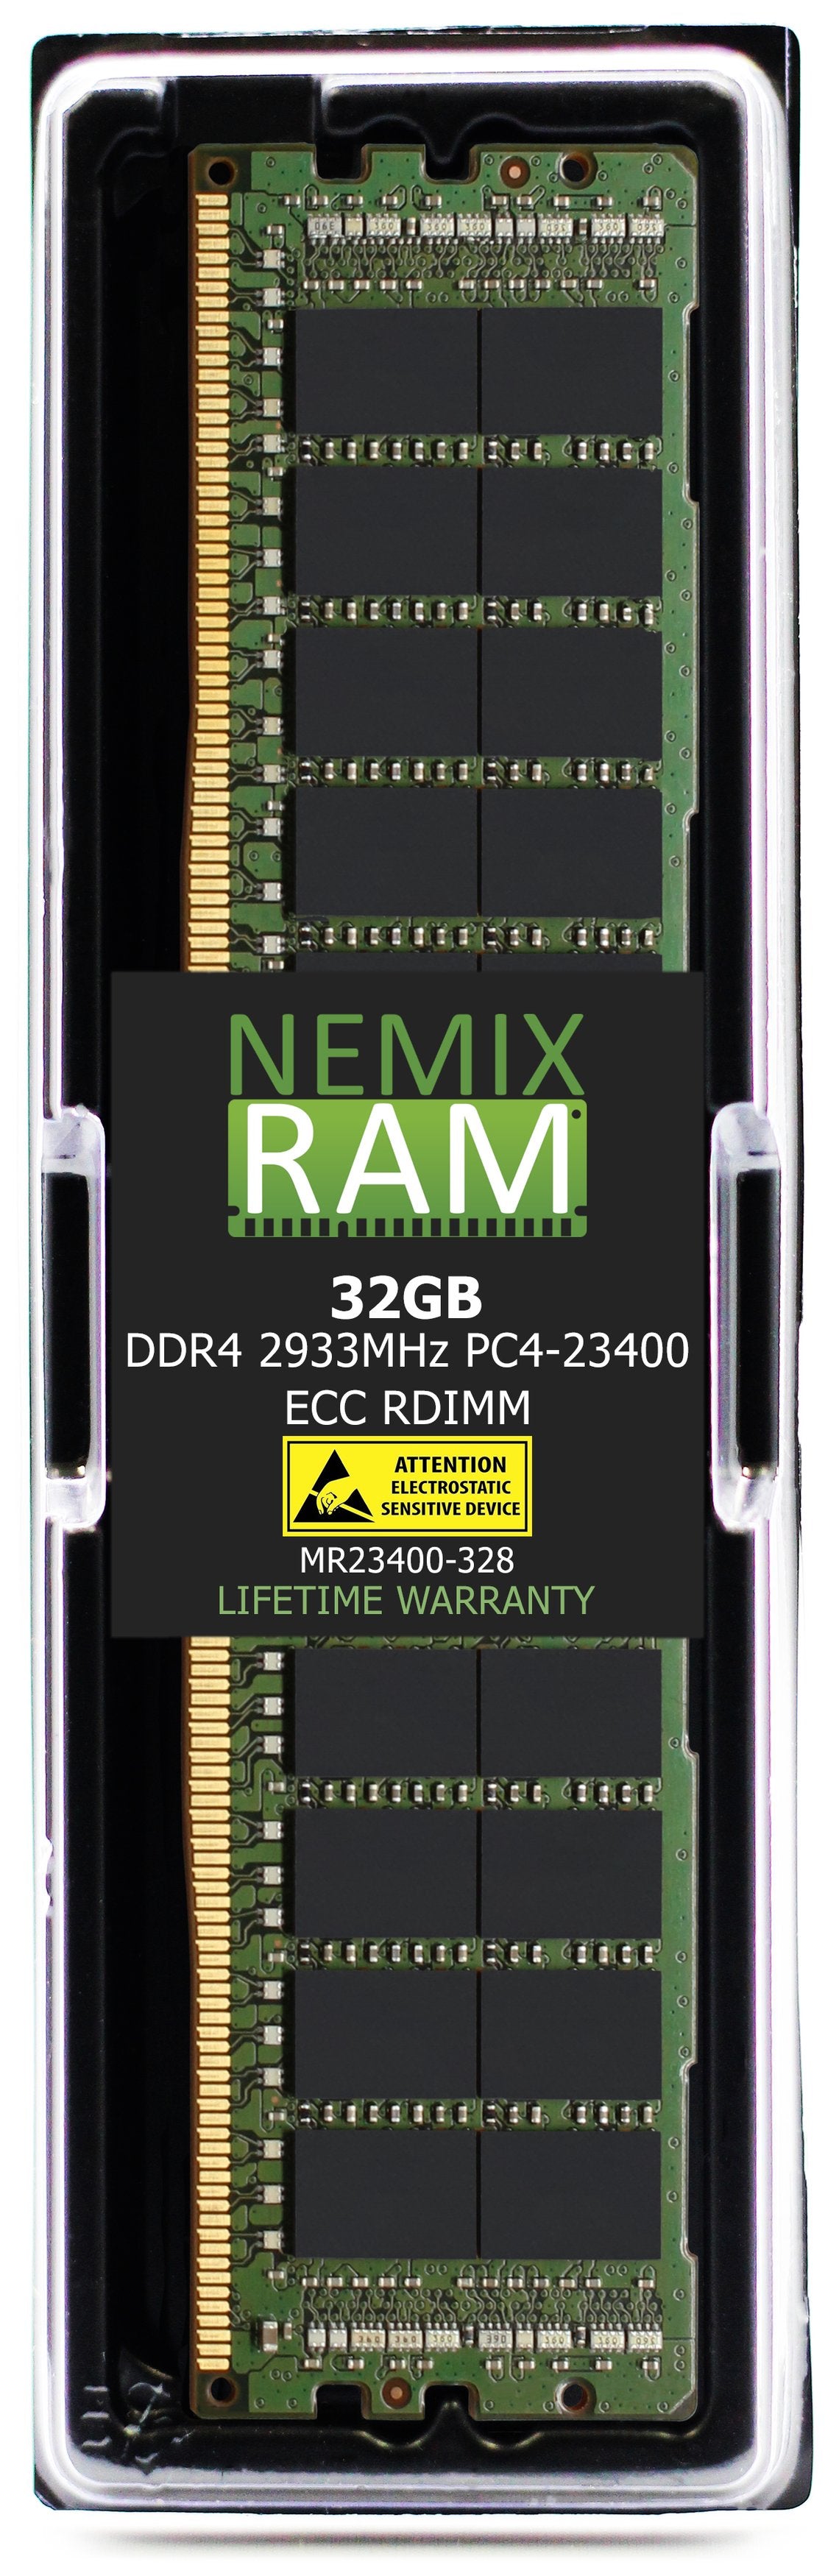 Hynix HMAA4GR7MJR8N-WM 32GB DDR4 2933MHZ PC4-23400 RDIMM Compatible Memory Module